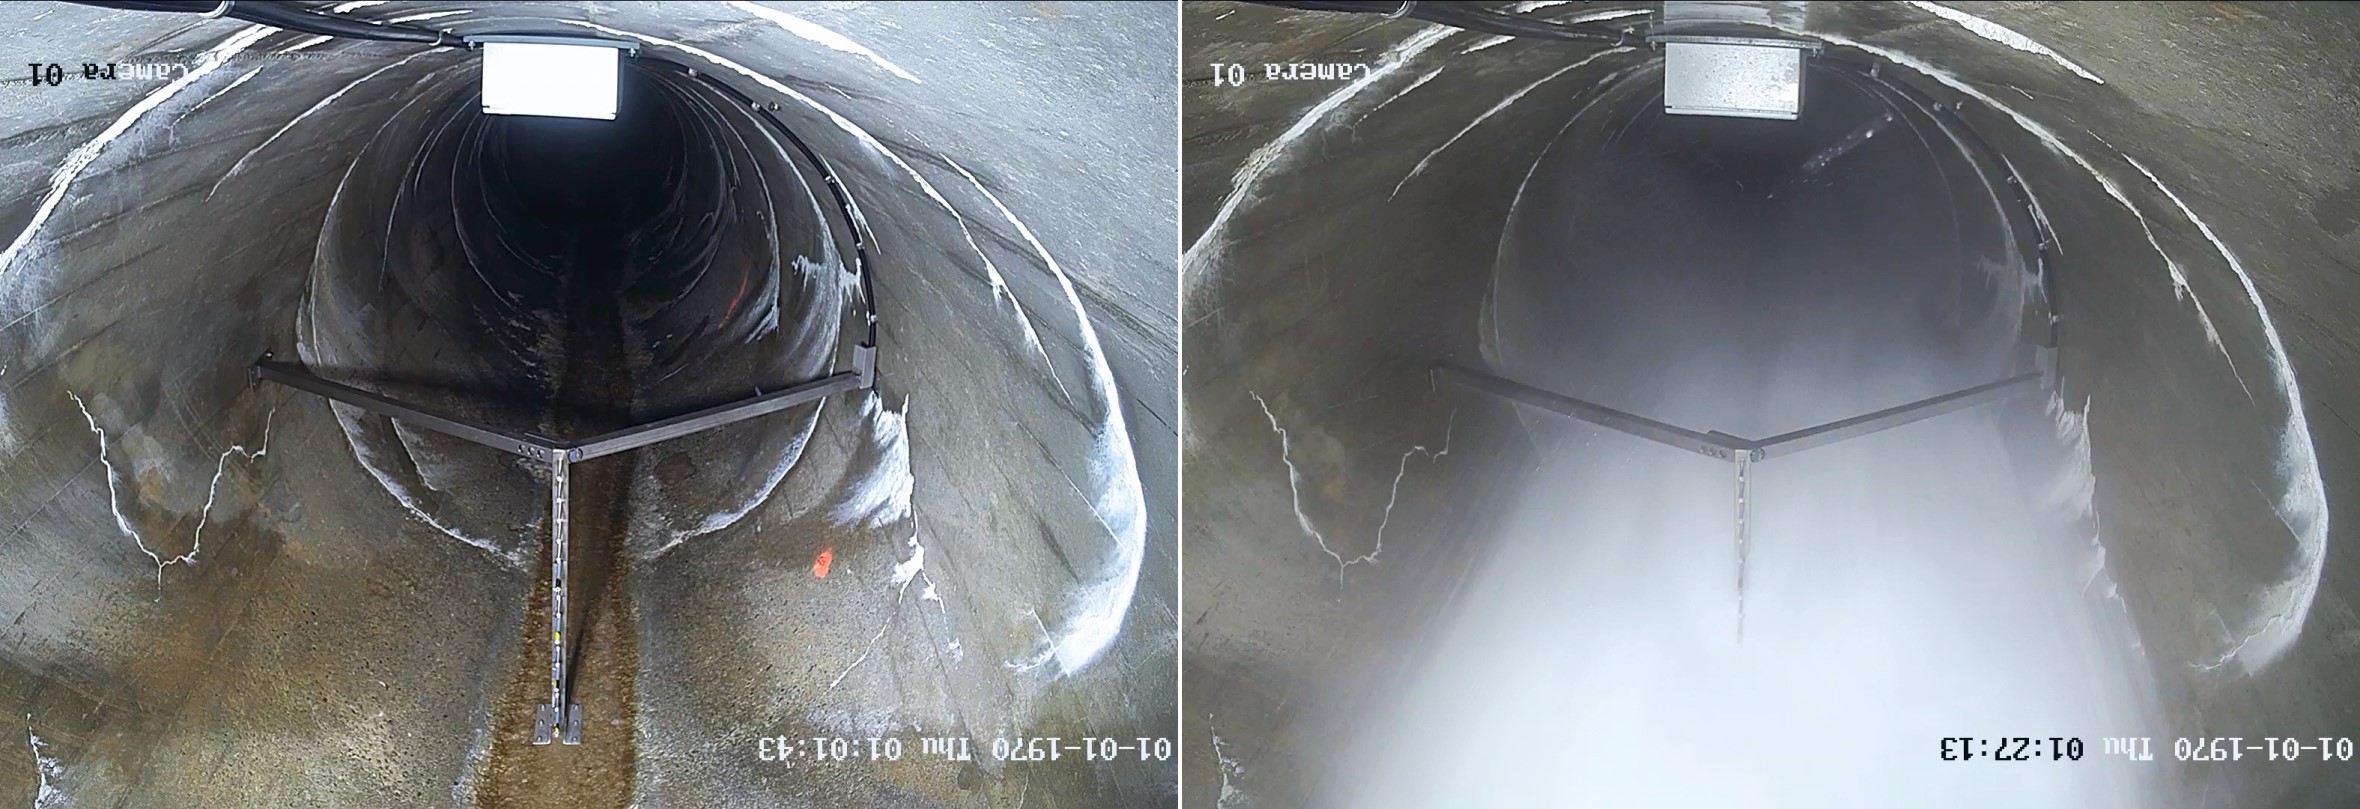 Air-water flow instrumentation inside the Luzzone dam tunnel spillway